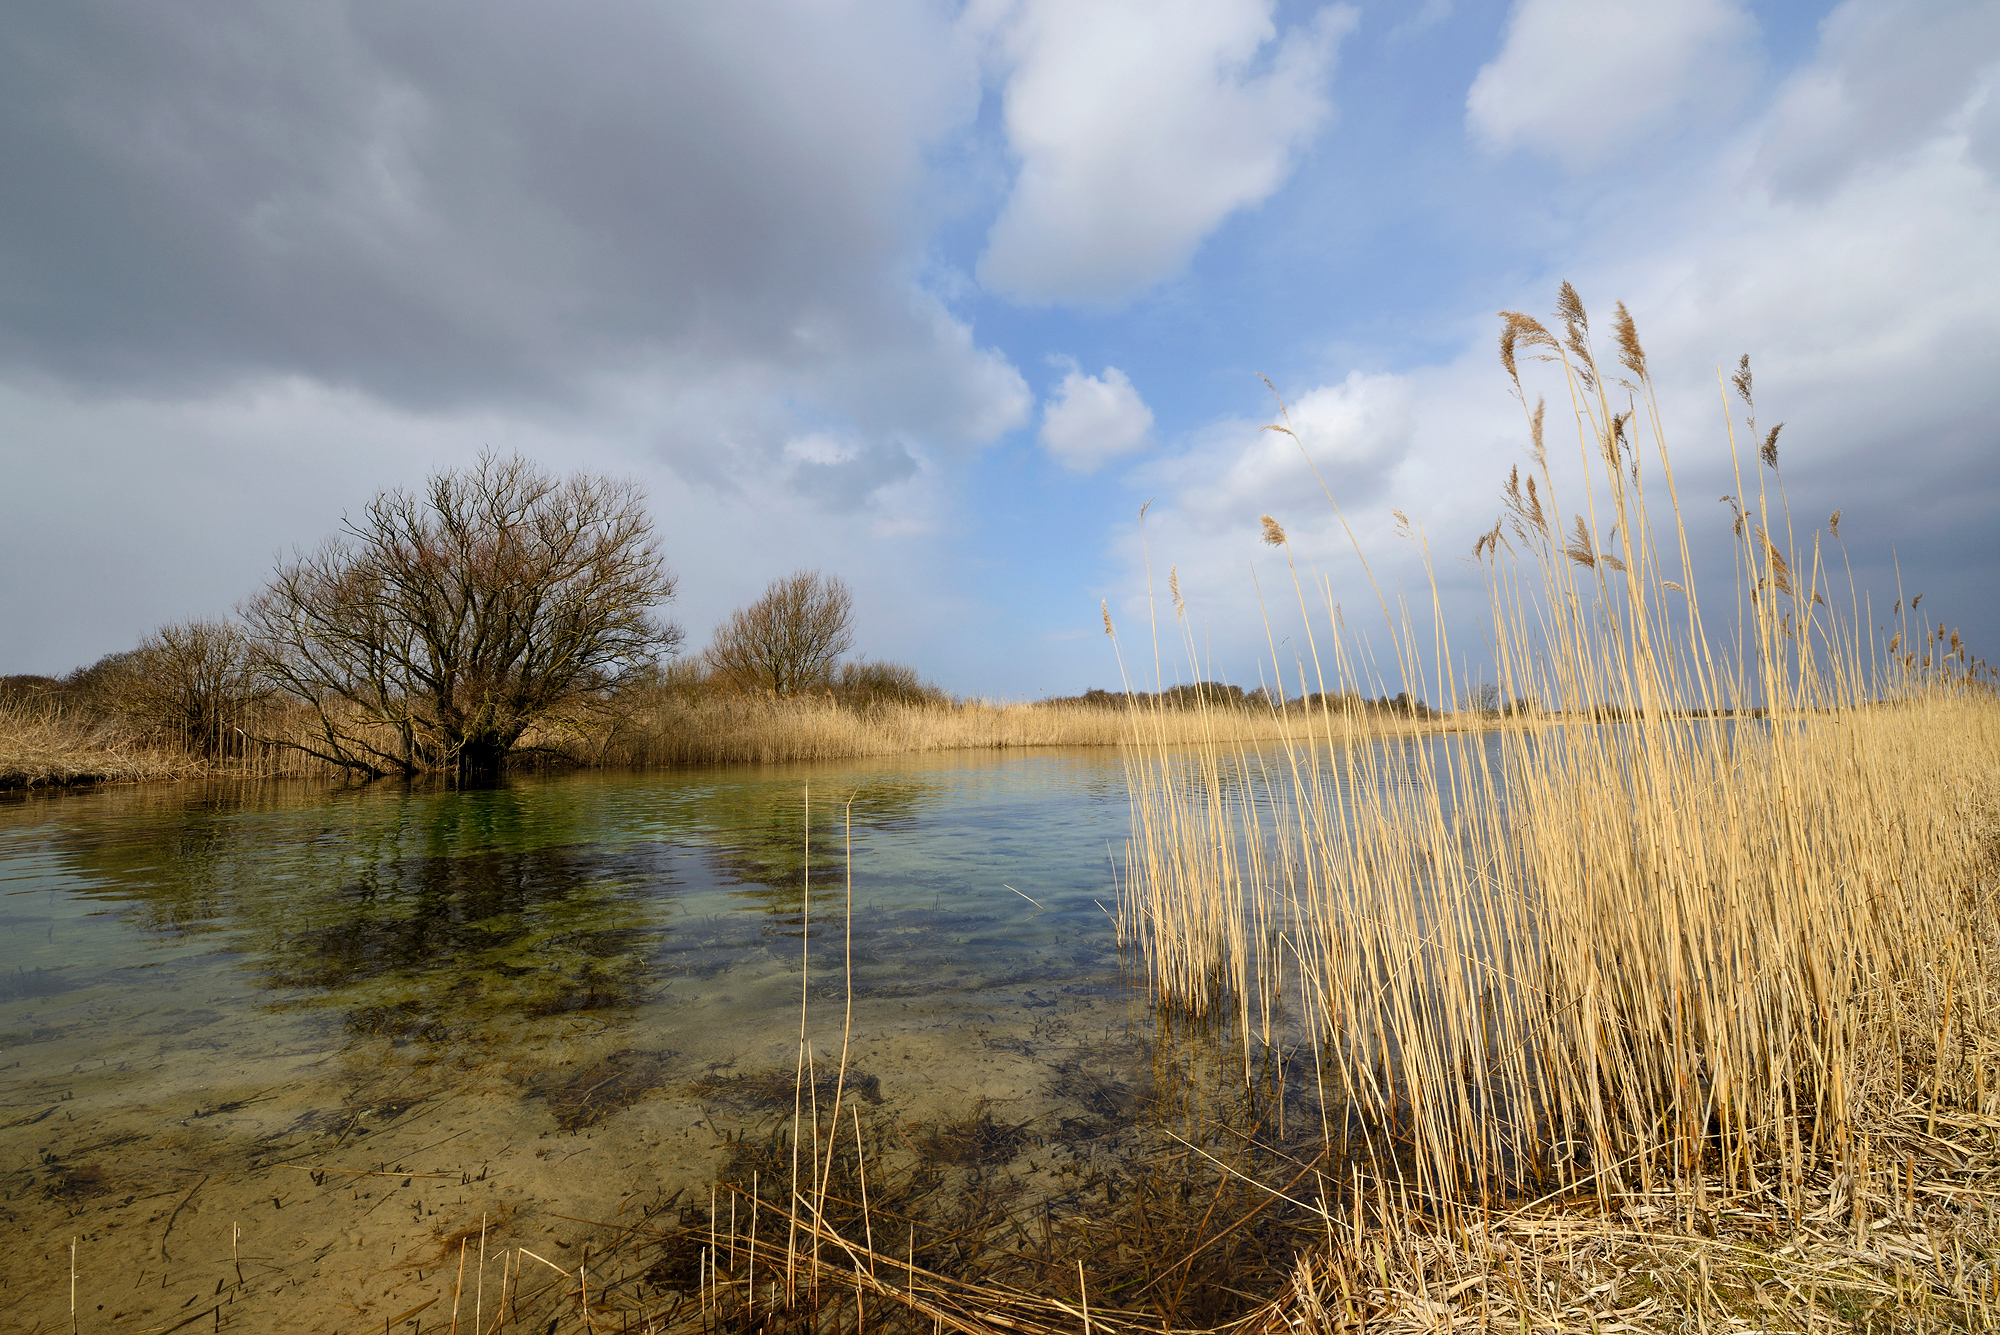 Oever met rietkraag langs infiltratiekanaal met helder water in het waterwingebied van het Noordhollands Duinreservaat bij Castricum.